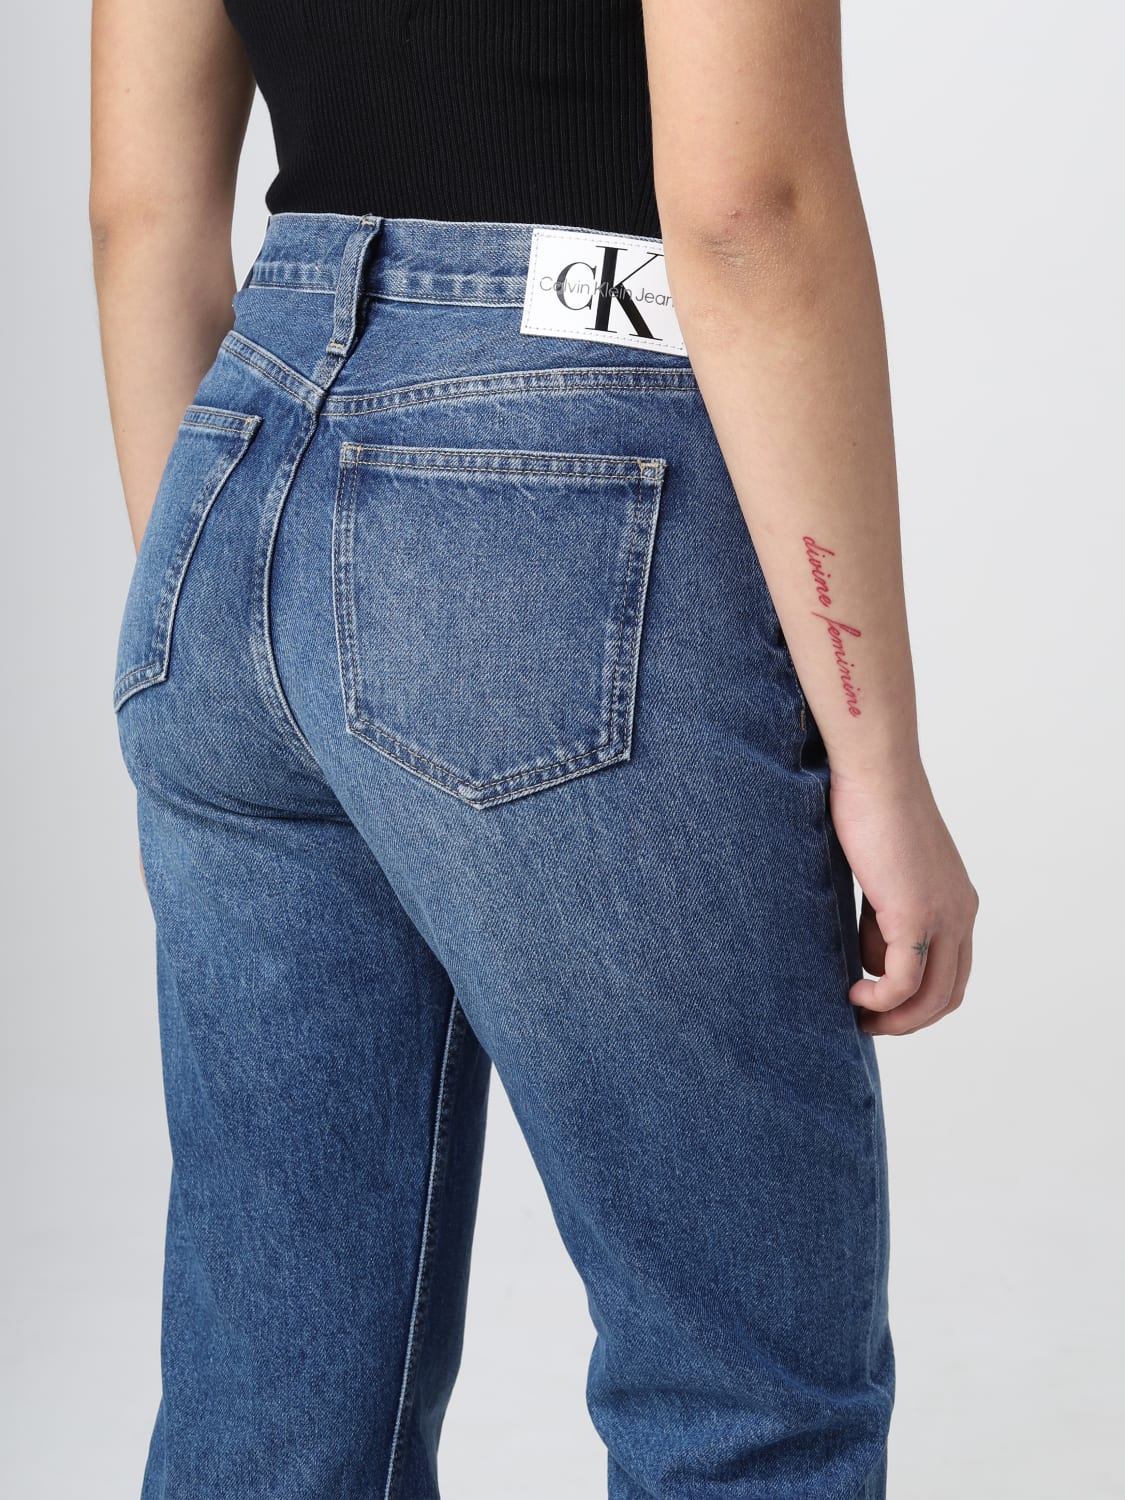 Calvin Klein Jeans カルバンクラインジーンズ ストレート 古着 - デニム